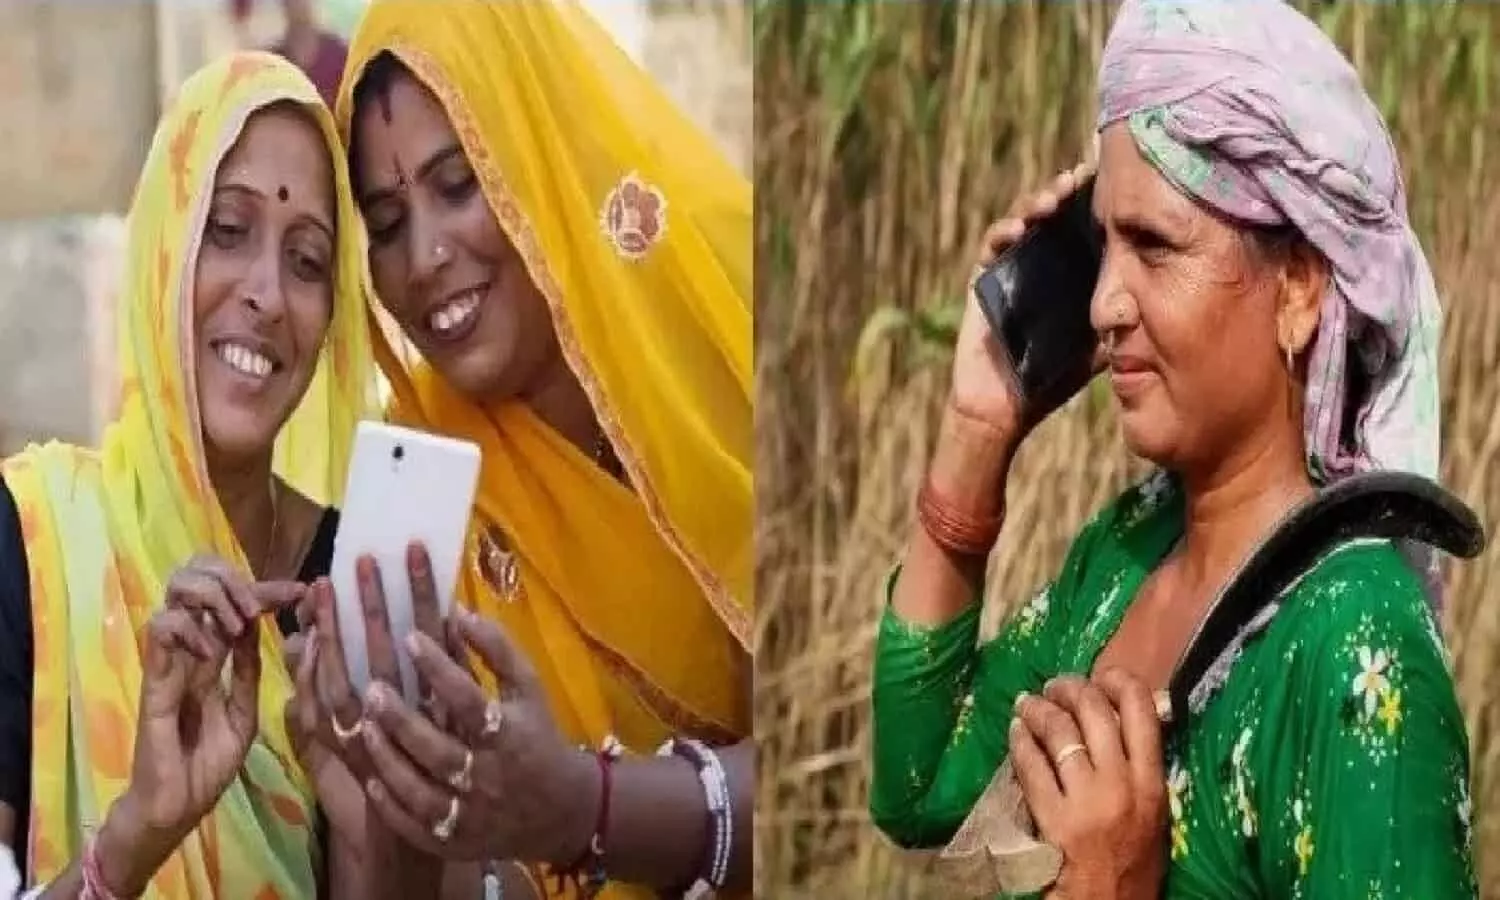 Free Smartphone: महिलाओ को लेकर बड़ा अपडेट, 1.33 करोड़ महिलाओं को मुफ्त में मिलेगा फोन और हर महीना डेटा